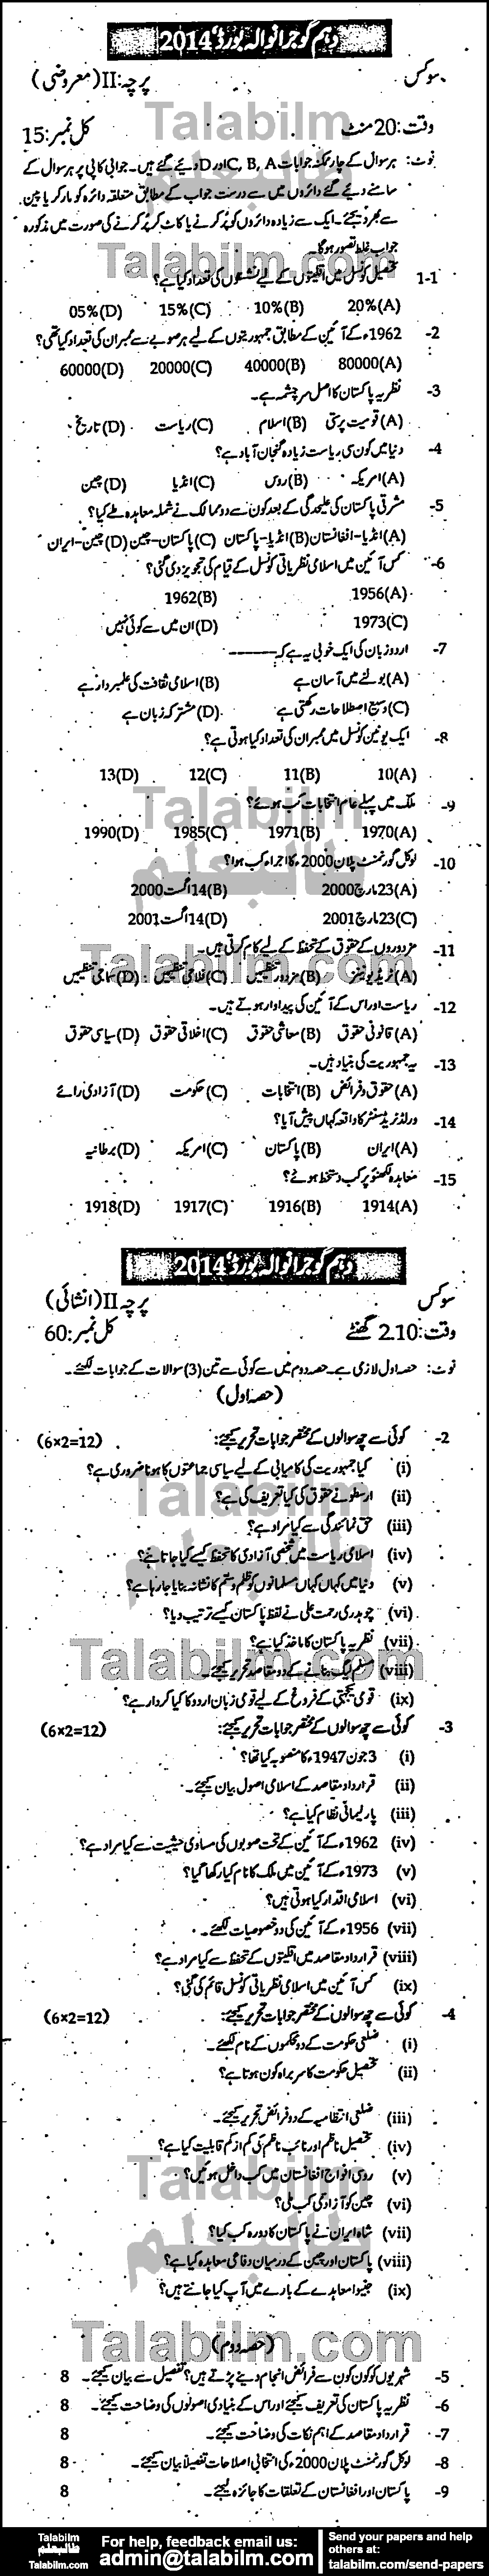 Civics 0 past paper for Urdu Medium 2014 Group-I